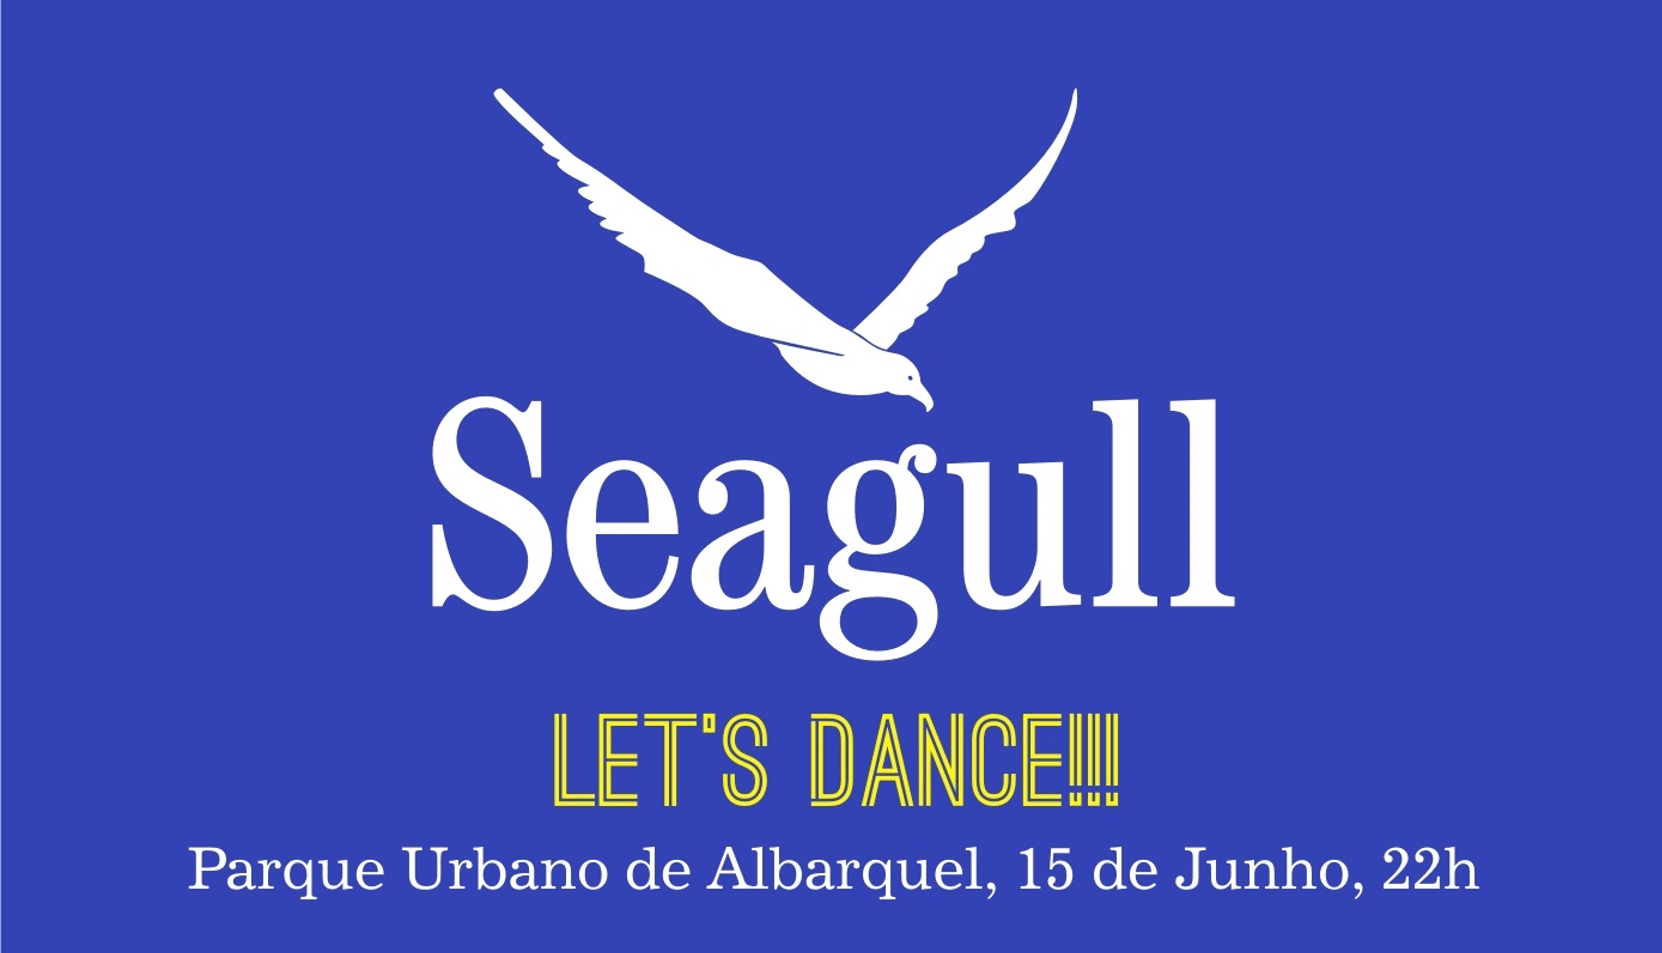 Festa Seagull Setubal